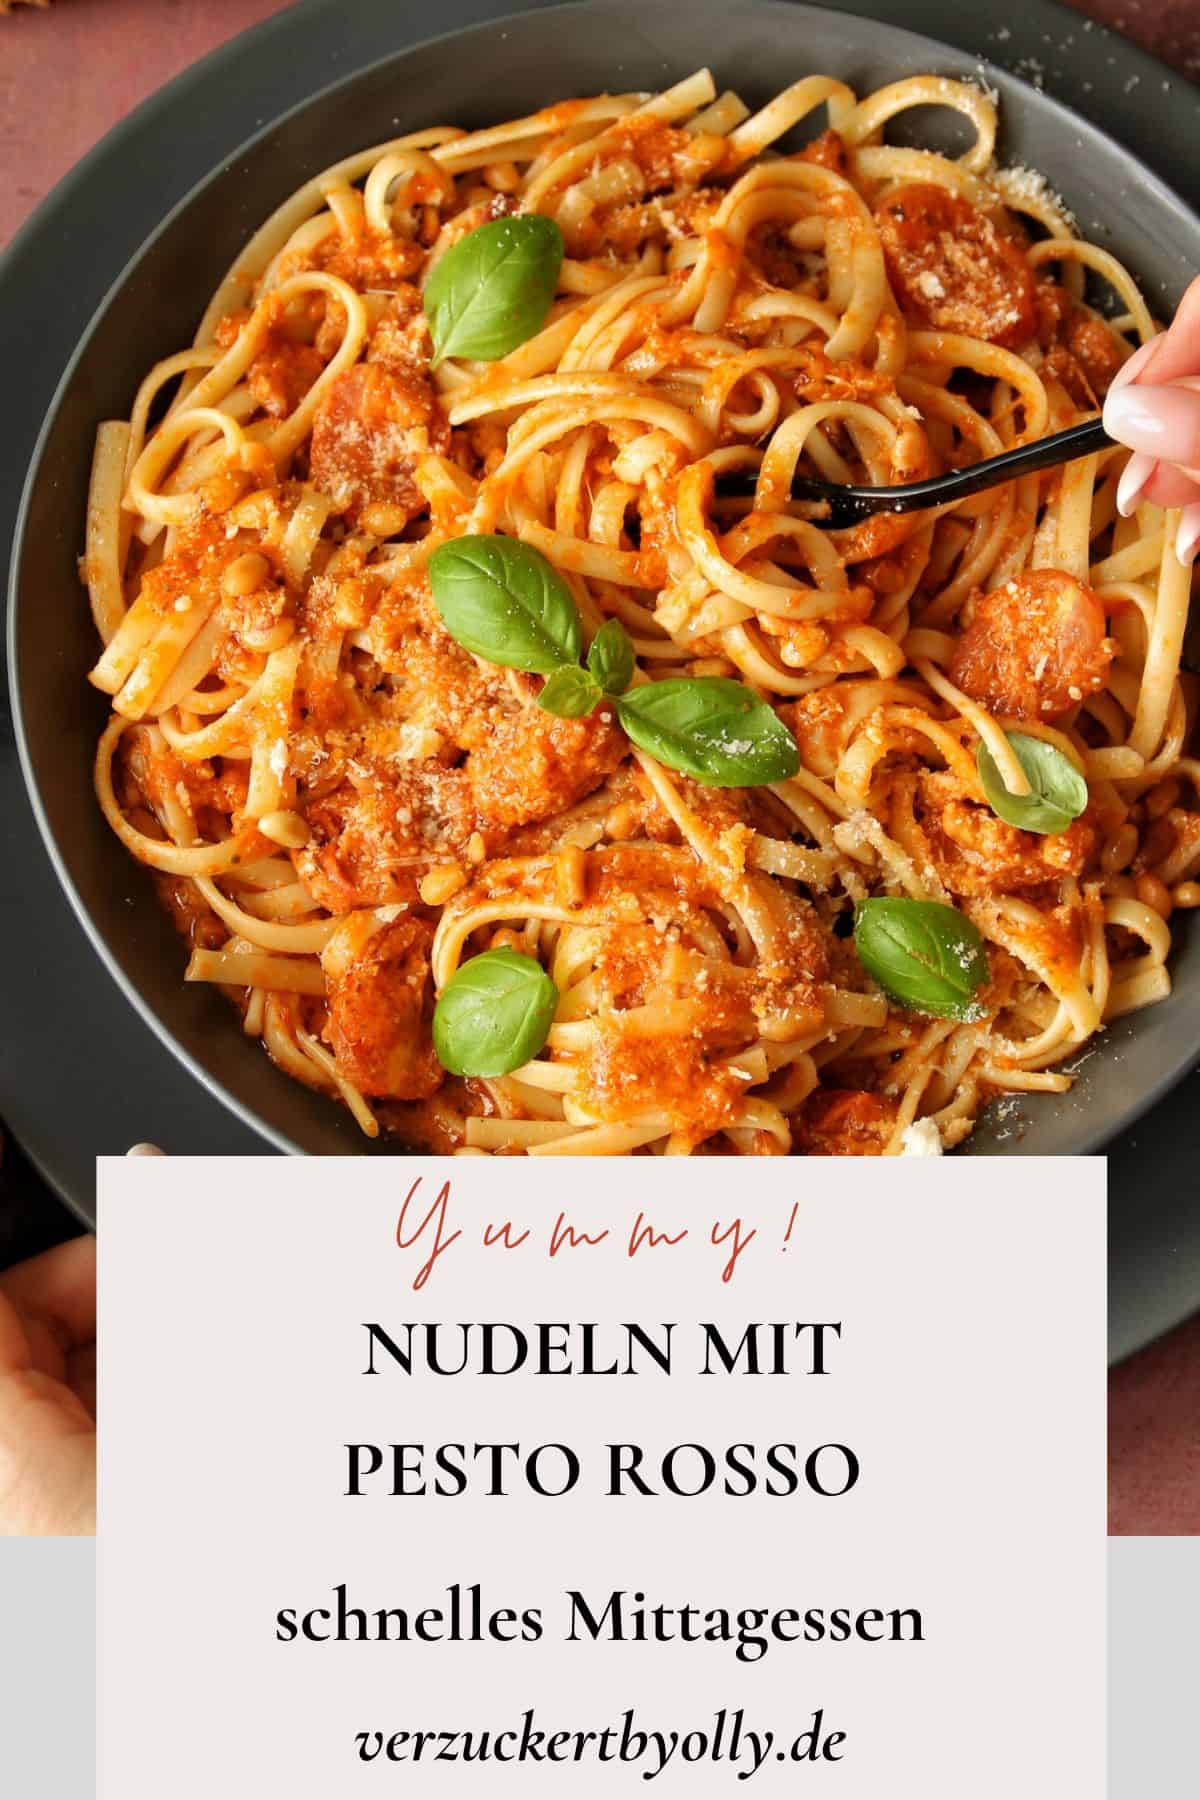 Pin zu Pinterest: Schnelles Mittagessen - Nudeln mit Pesto Rosso und Cherrytomaten